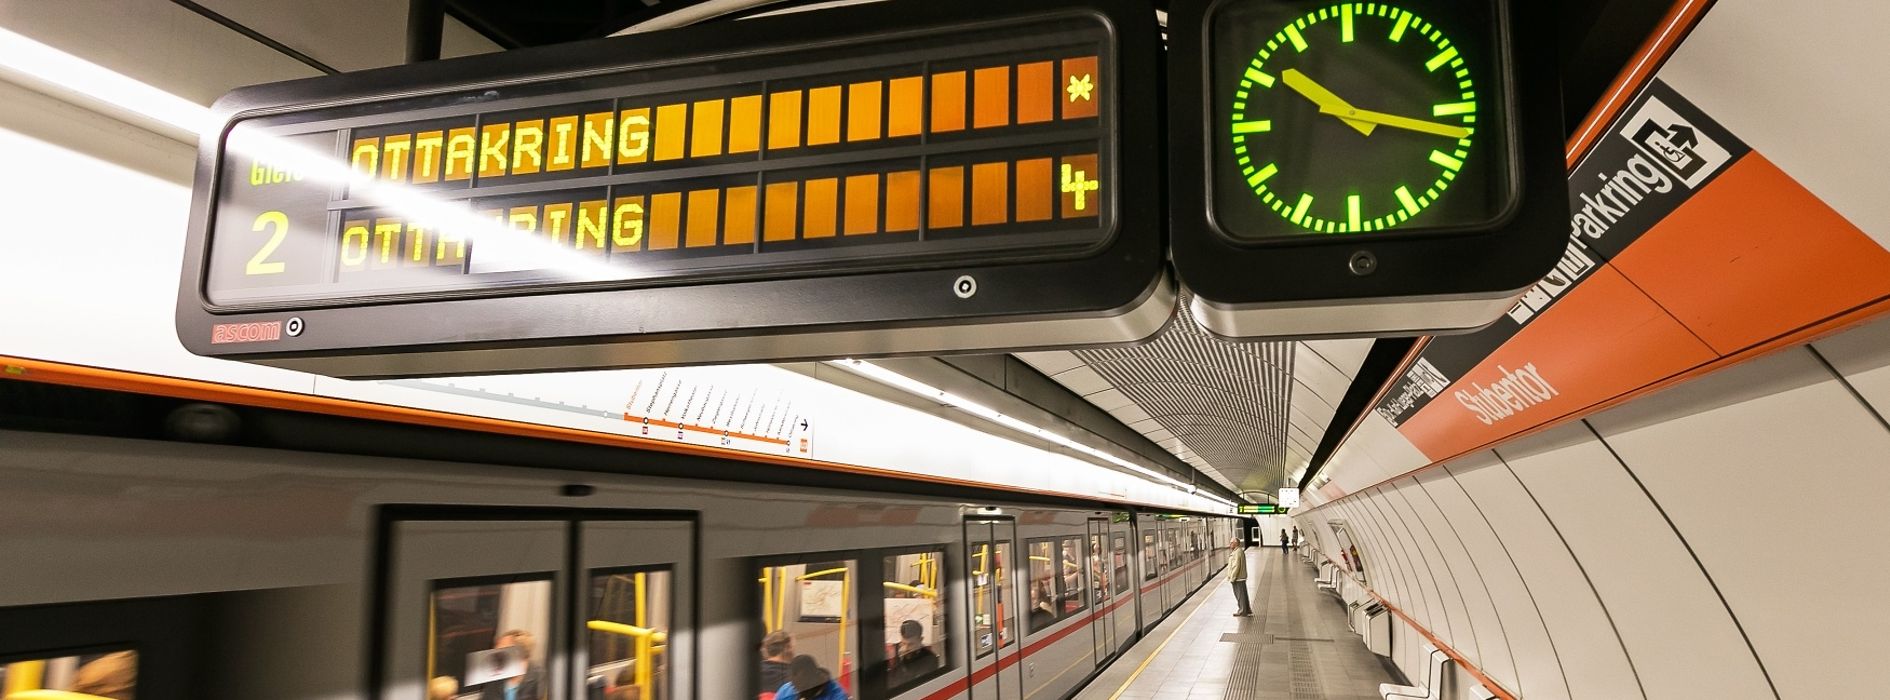 Tablica informacyjna z zegarem w wiedeńskiej linii metra